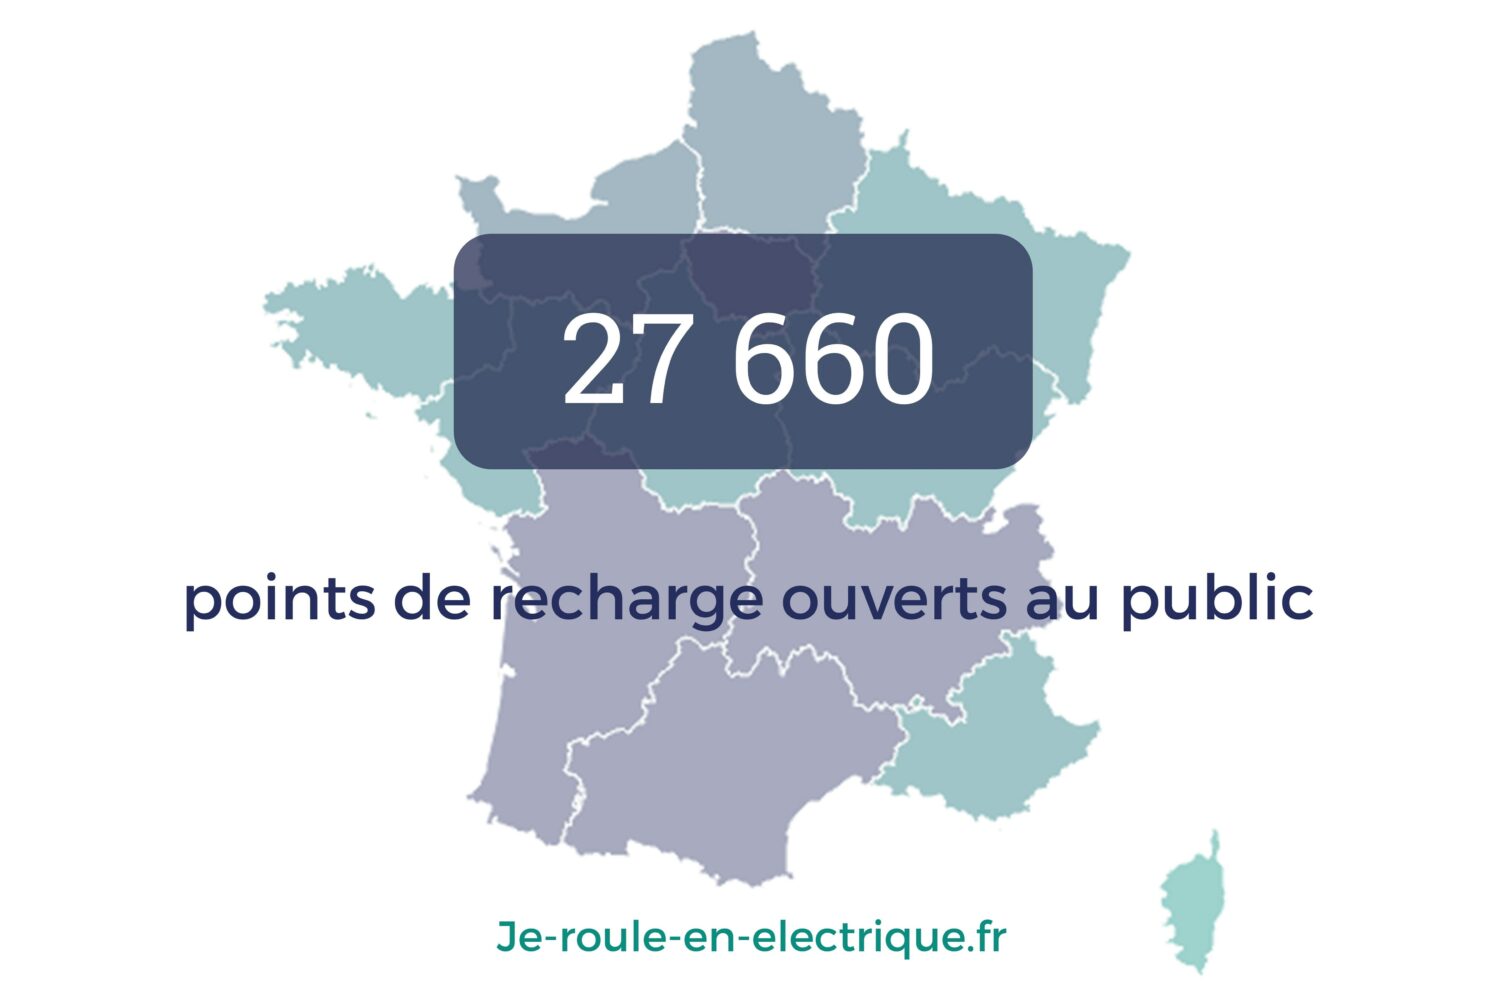 2019 - Renault partenaire du portail je-roule-en-electrique.fr